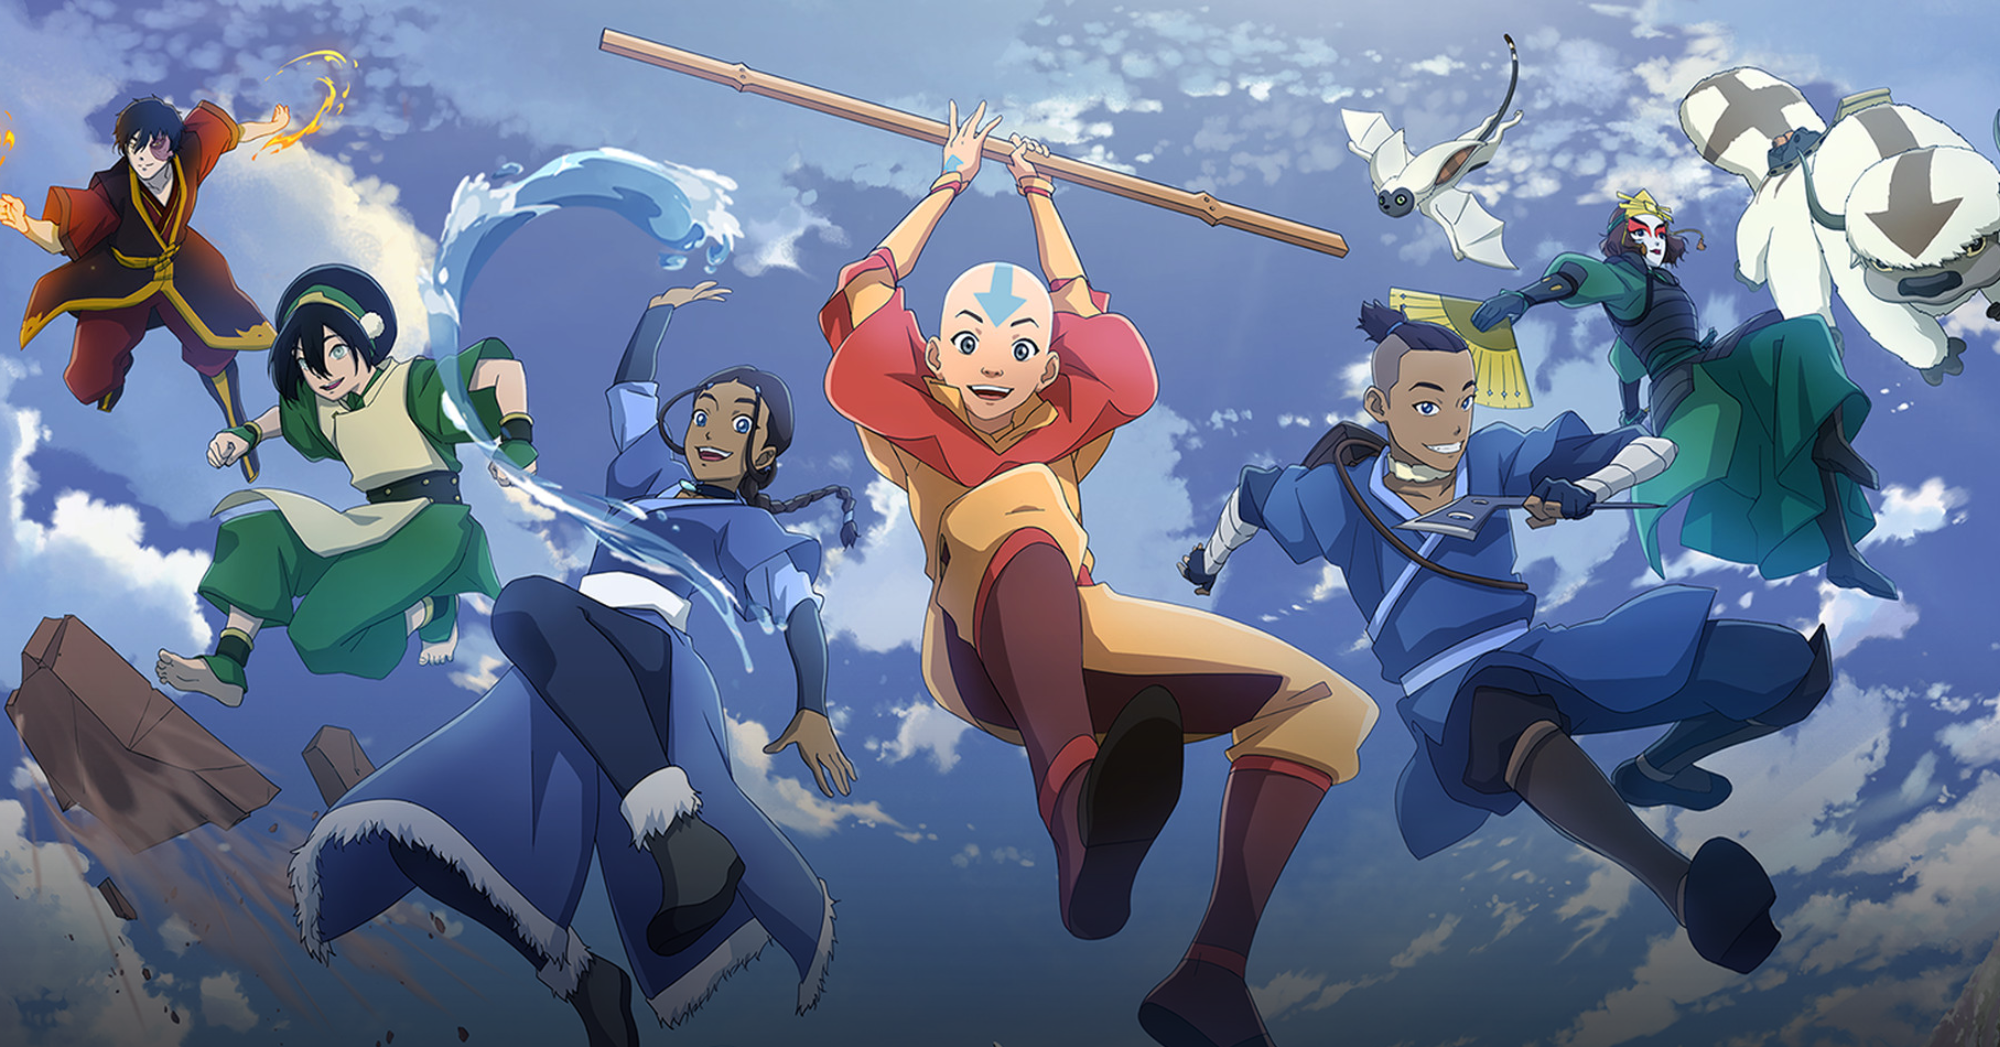 Avatar Generations  la leyenda de Aang tendrá un videojuego gratuito y de  mundo abierto  juegos  TECNOLOGIA  EL COMERCIO PERÚ